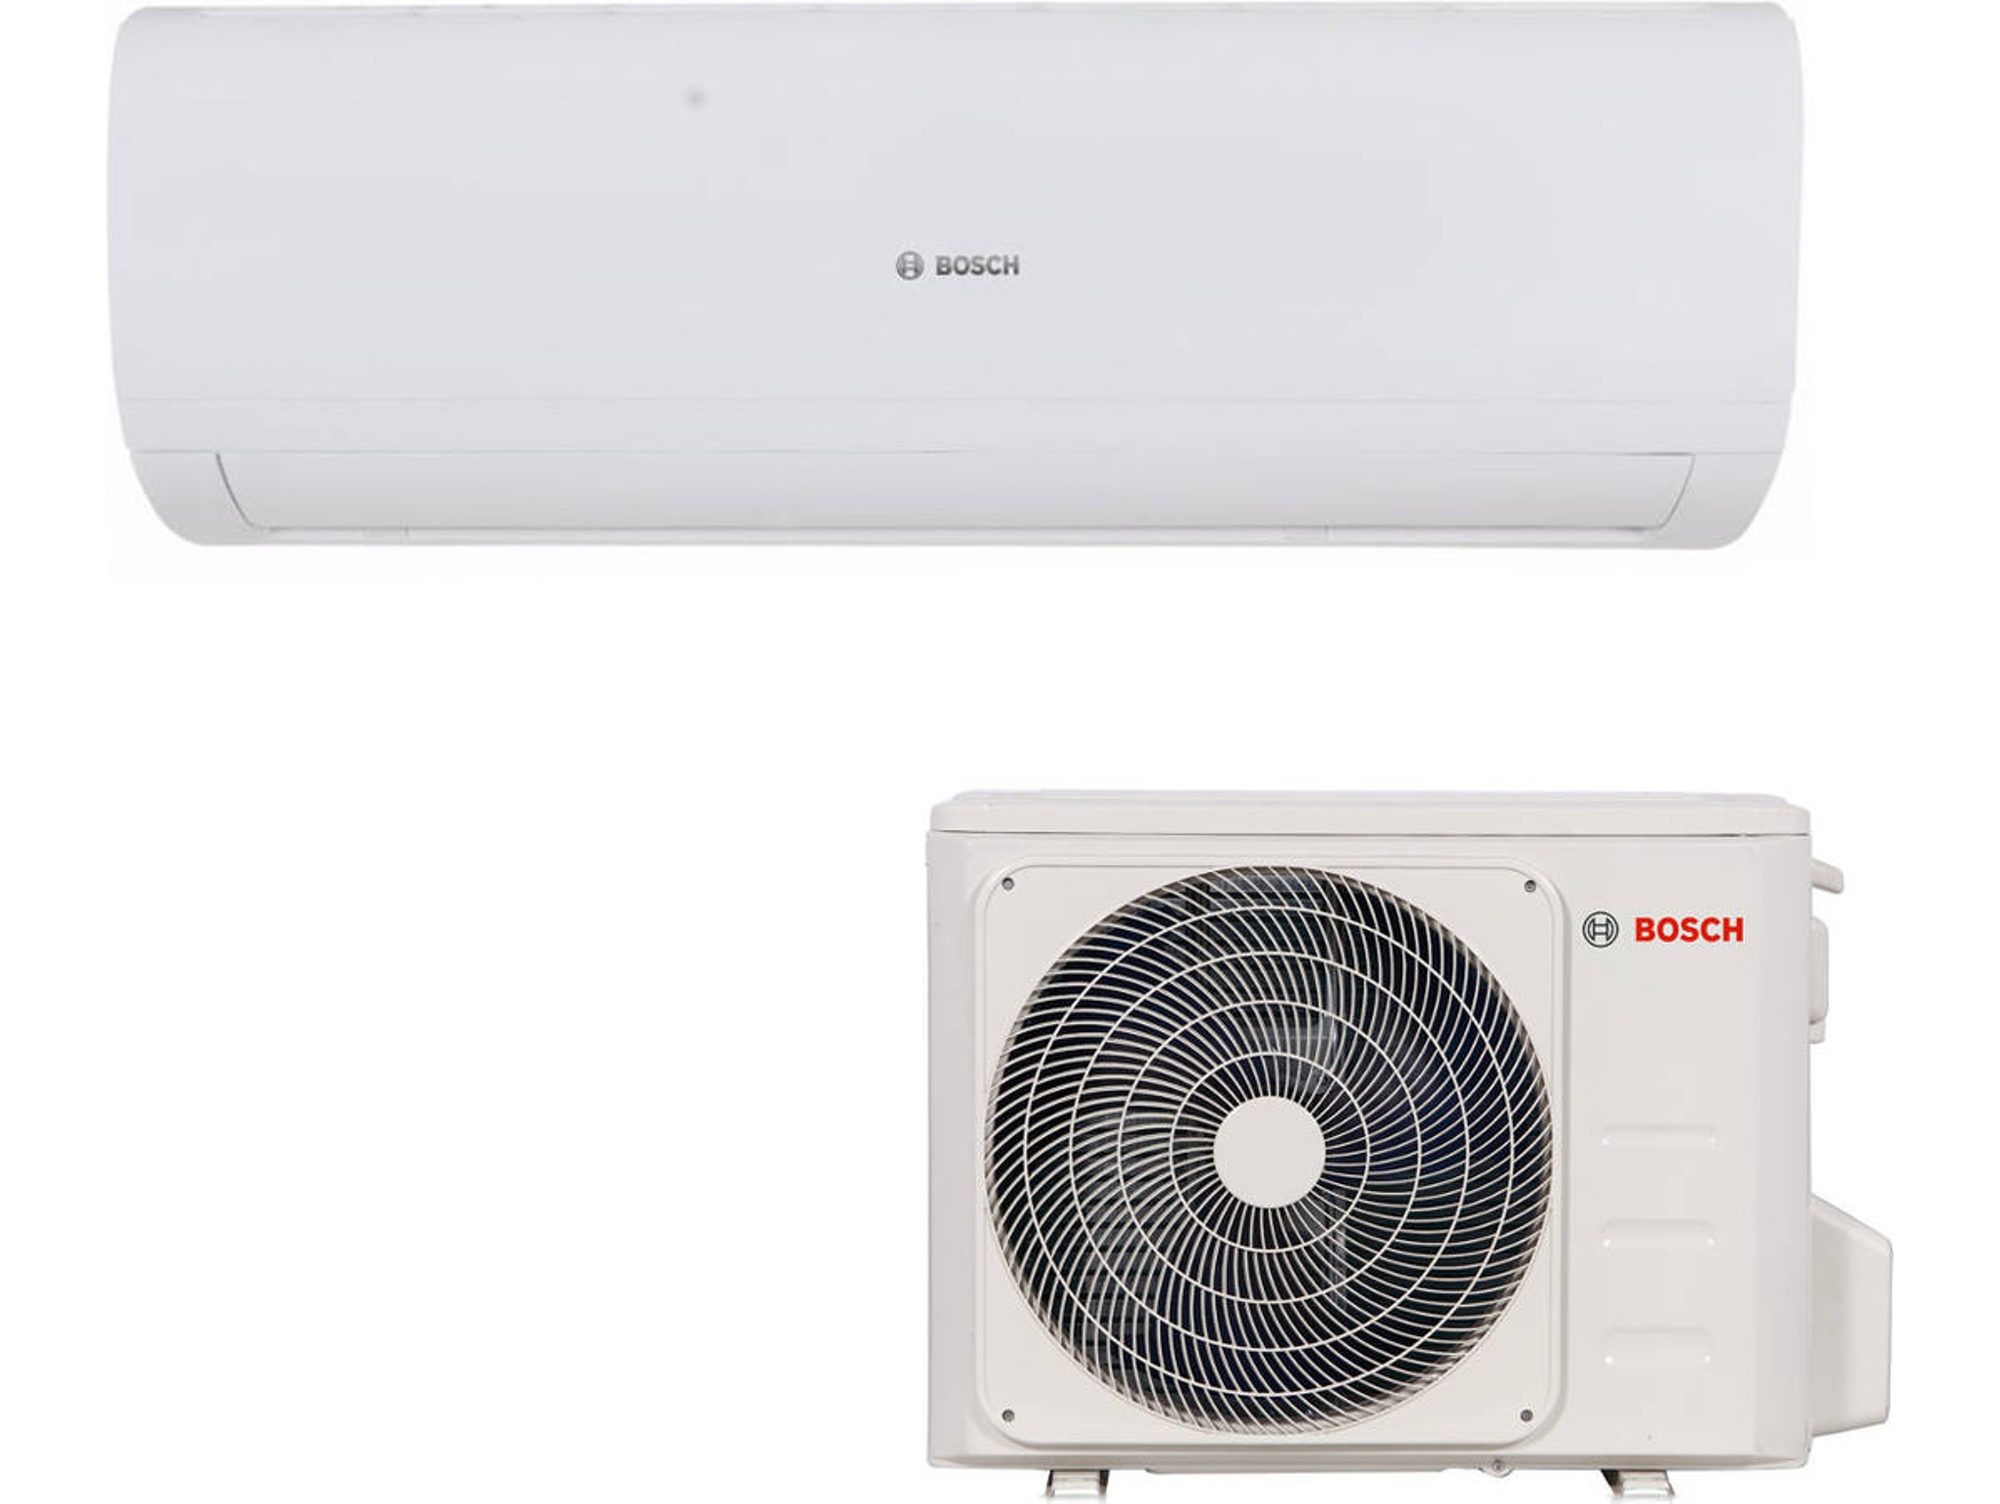 Bosch Climate 5000 aire acondicionado split con bomba de calor 2236 frigorías r32 2.6 kw inverter 26 18 2255